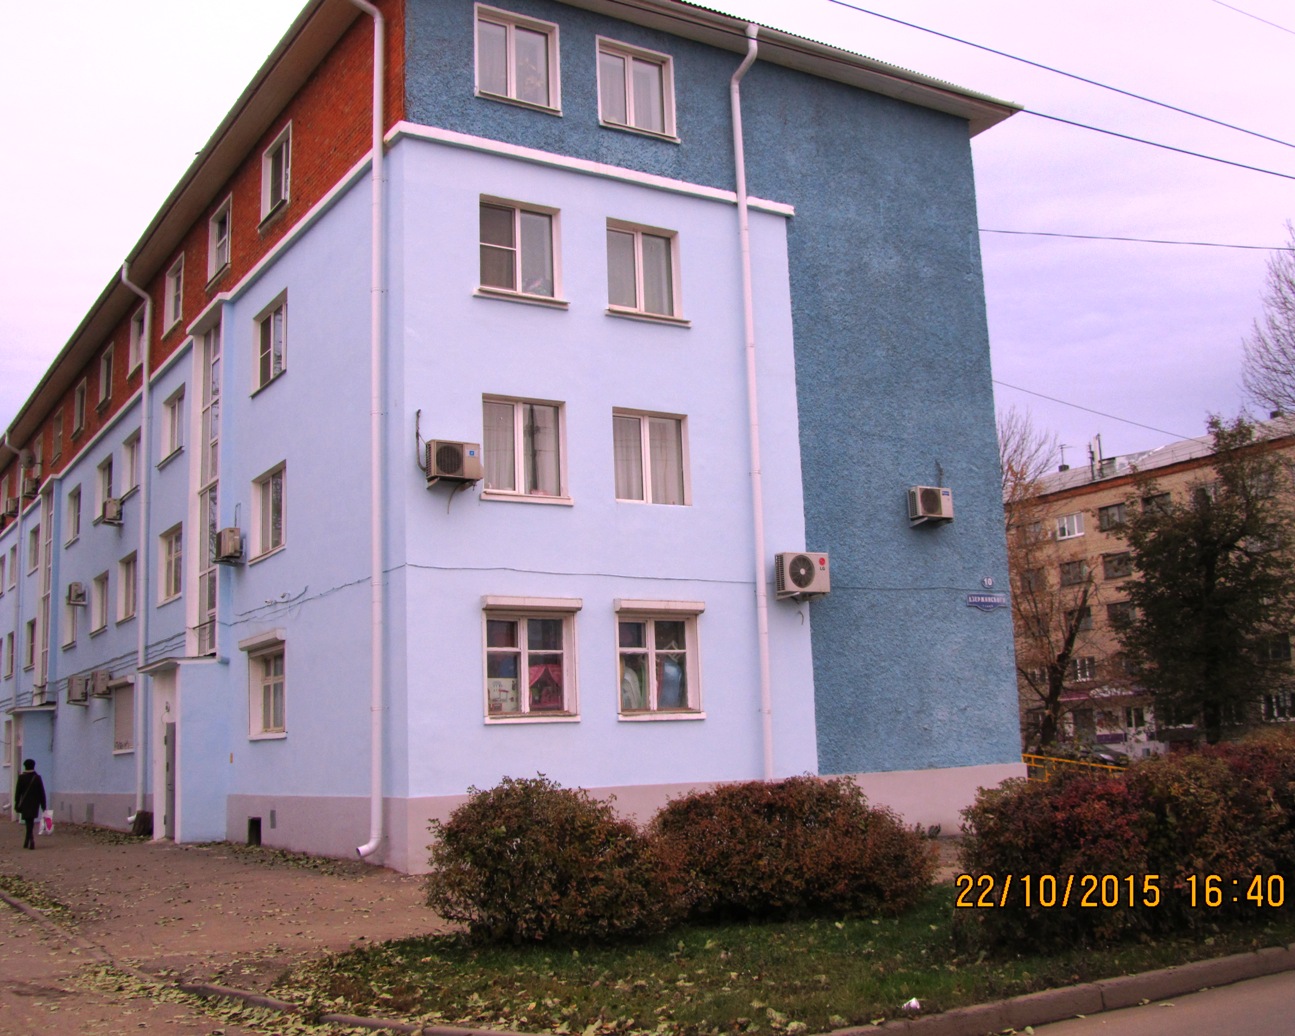 Дом после капитального ремонта по адресу город Новомосковск улица Трудовые резервы дом 38-10